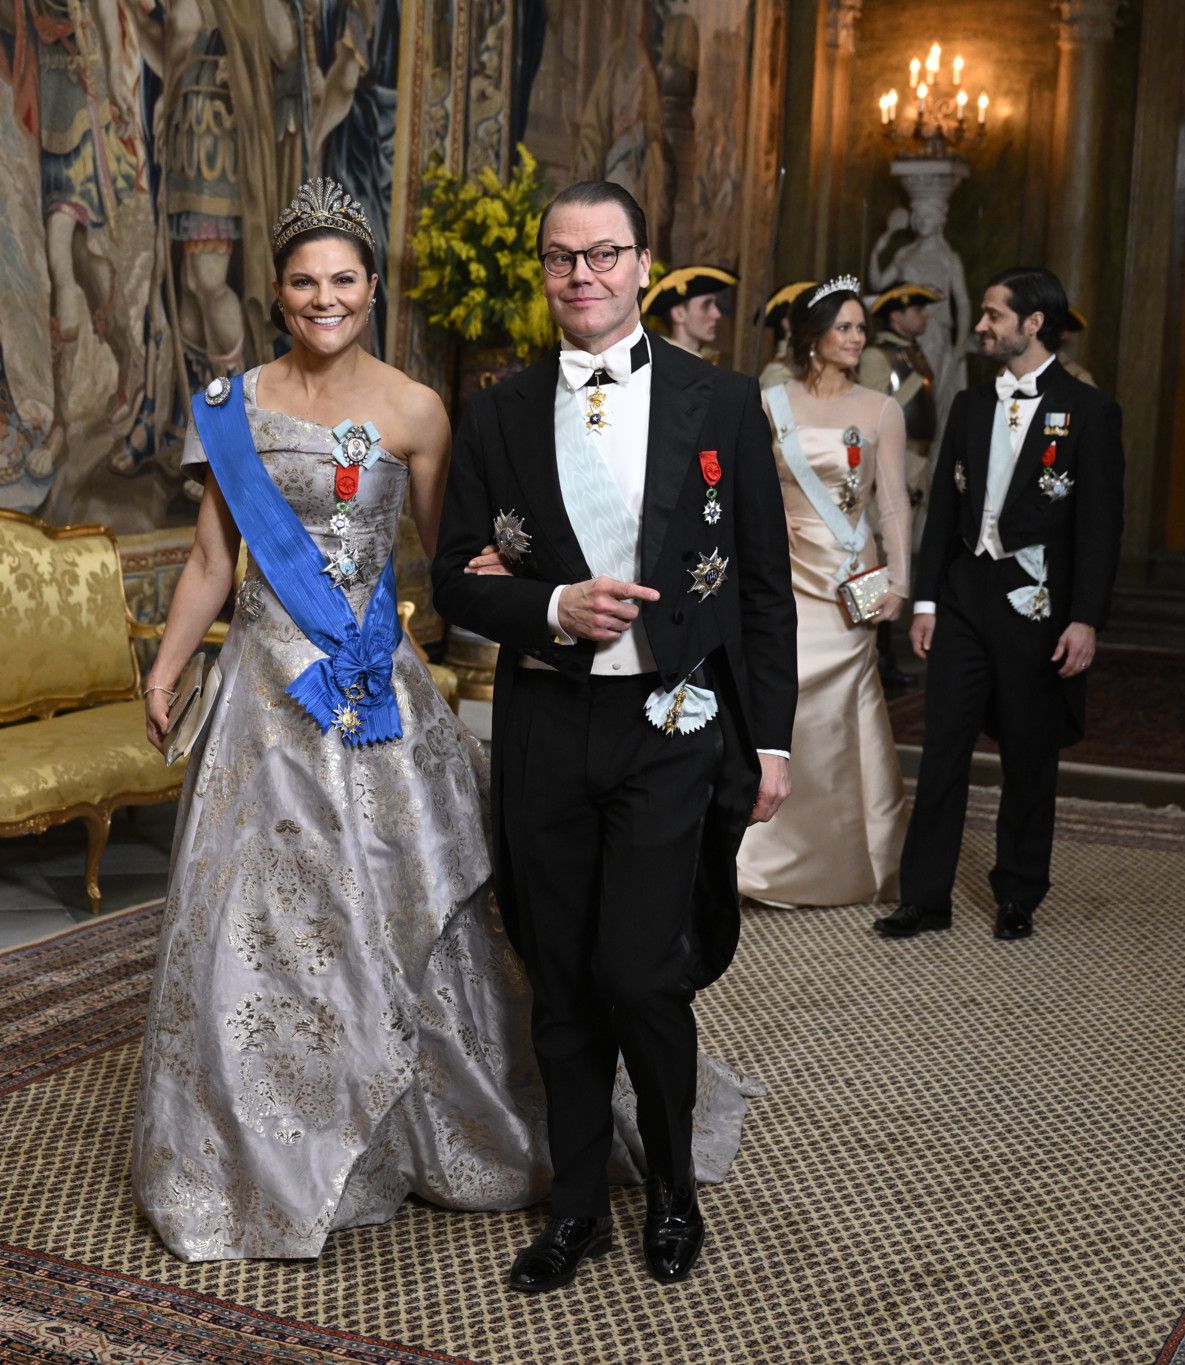 Kronprinzessin Victoria von Schweden hat ihren Fitnesstrainer geheiratet, er ist seither Prinz Daniel.